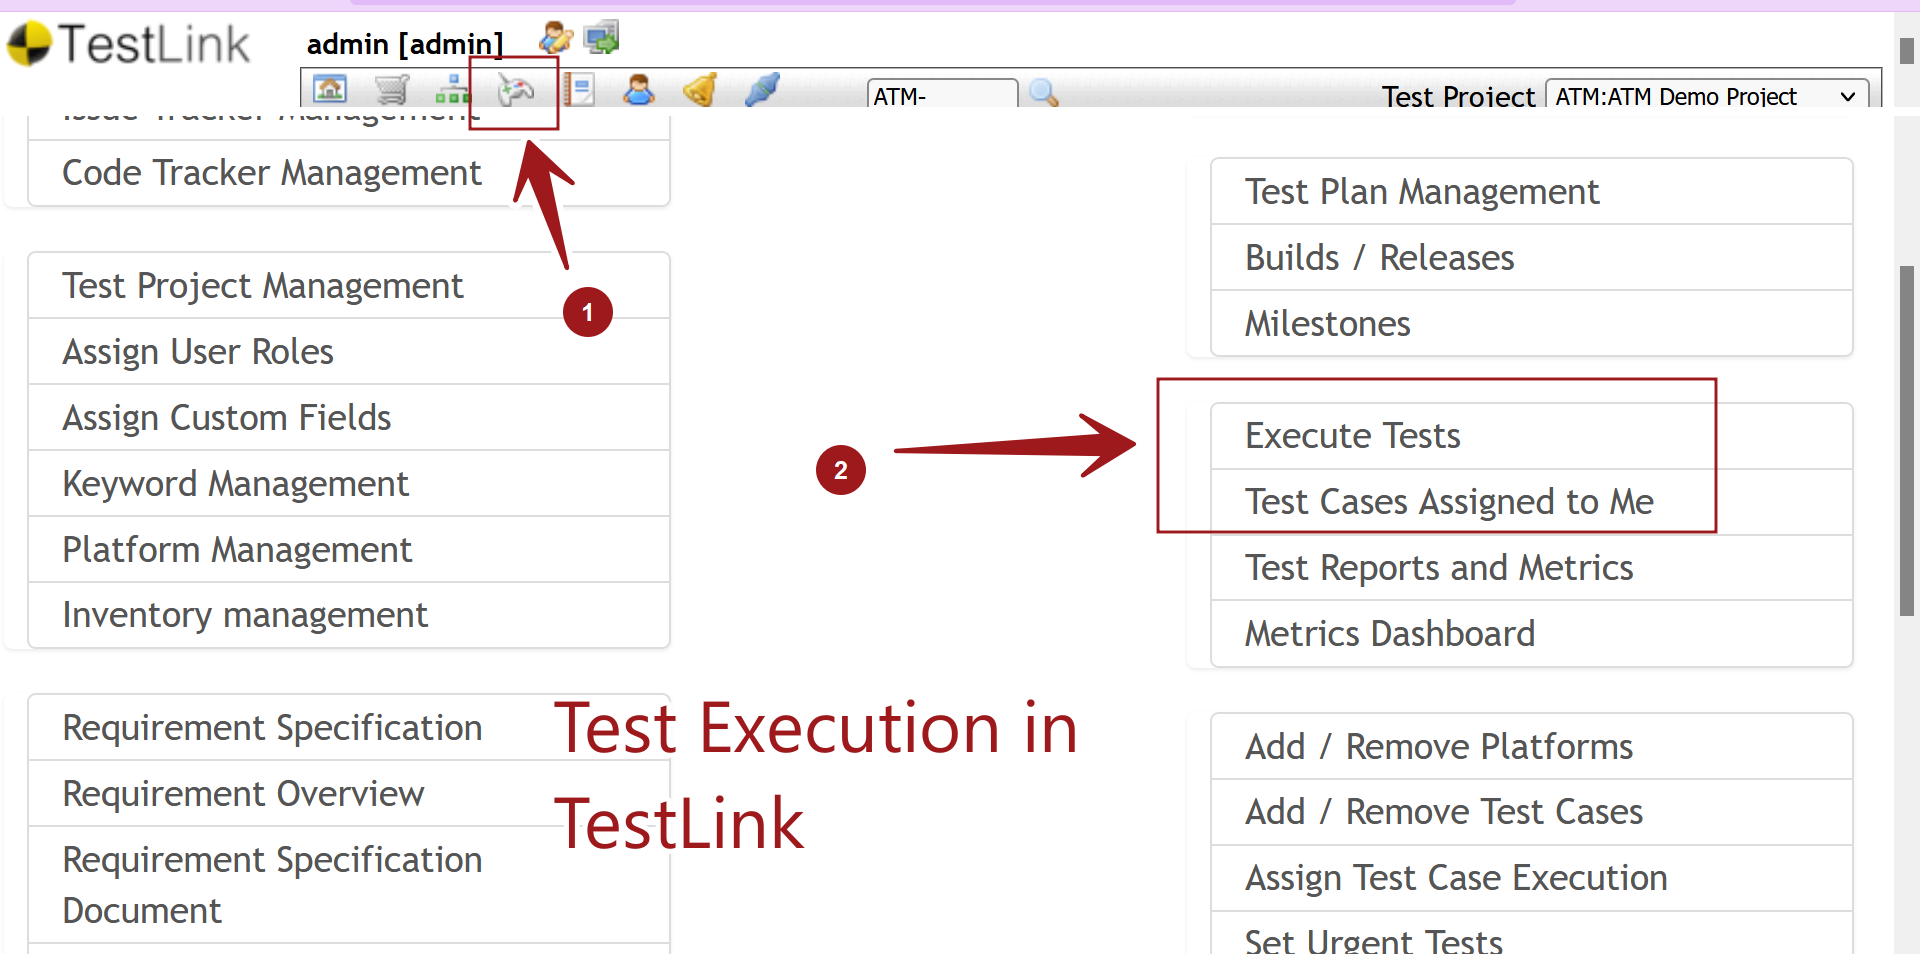 Test Execution in TestLink